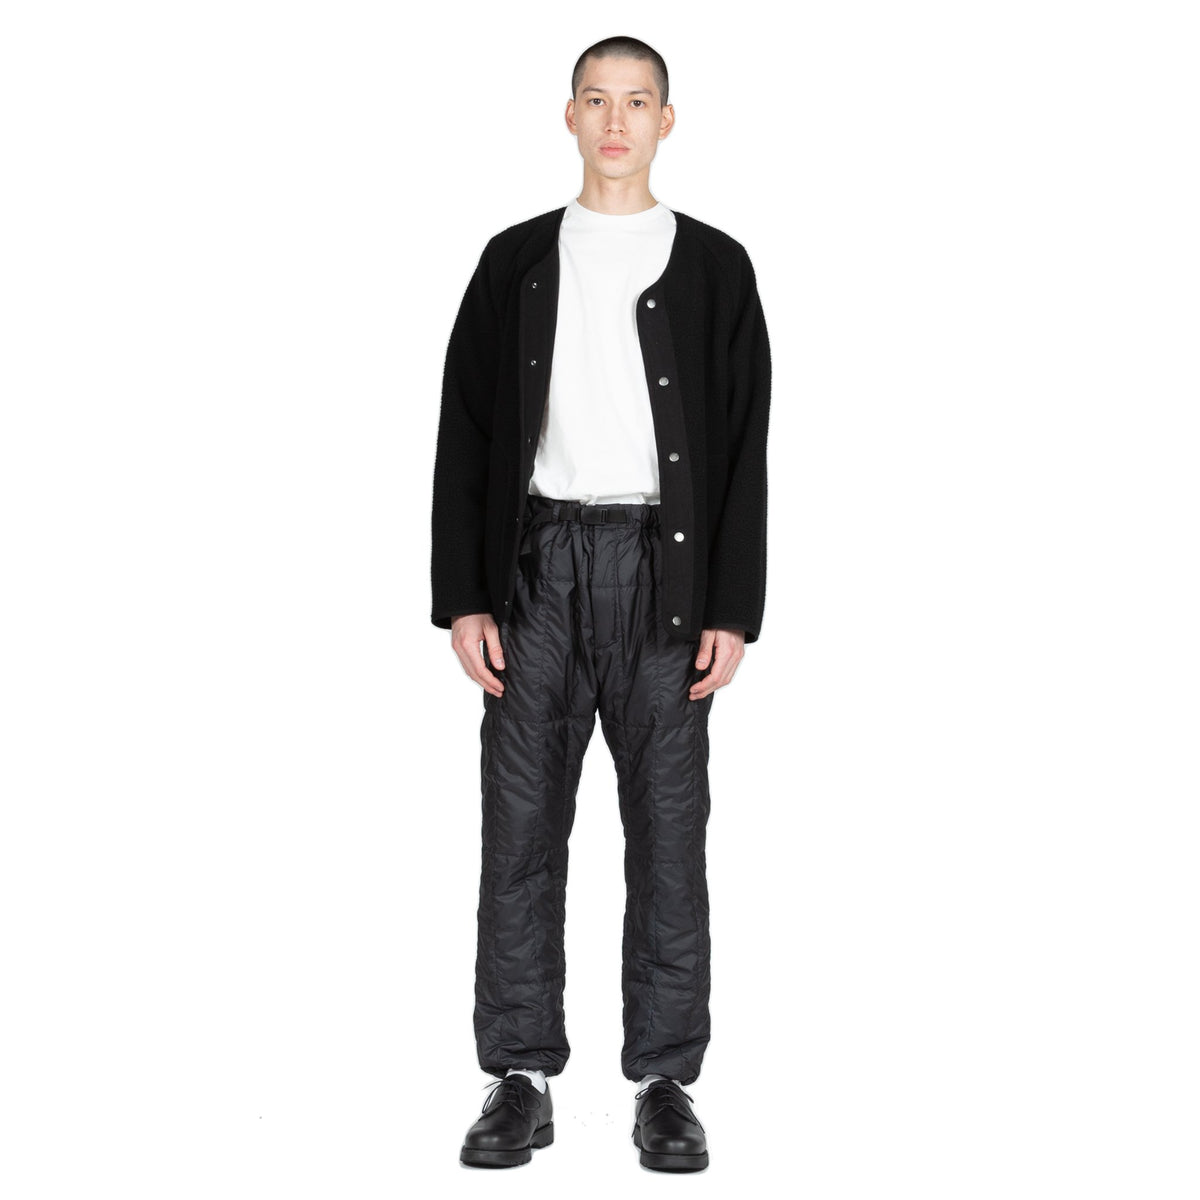 Gramicci Boa Fleece Jacket in Black outer wear warm front